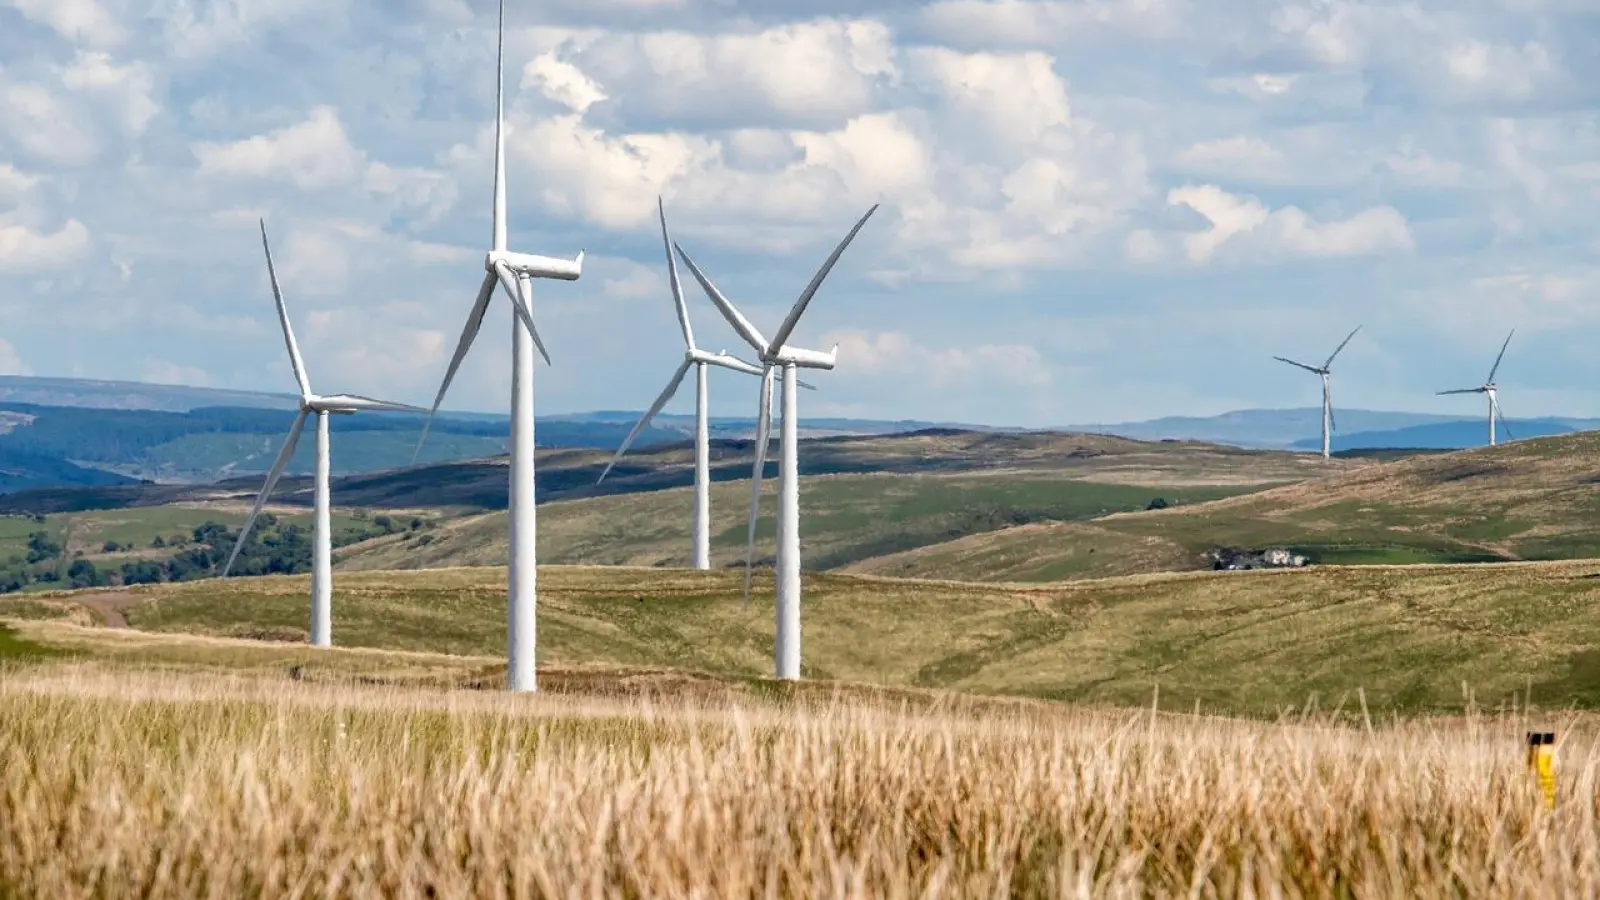 Die Energiewende ist ein entscheidender Hebel auf dem Weg zur Klimaneutralität. Bei der Umsetzung gibt es aber durchaus noch Herausforderungen.  (Foto: Pixabay)